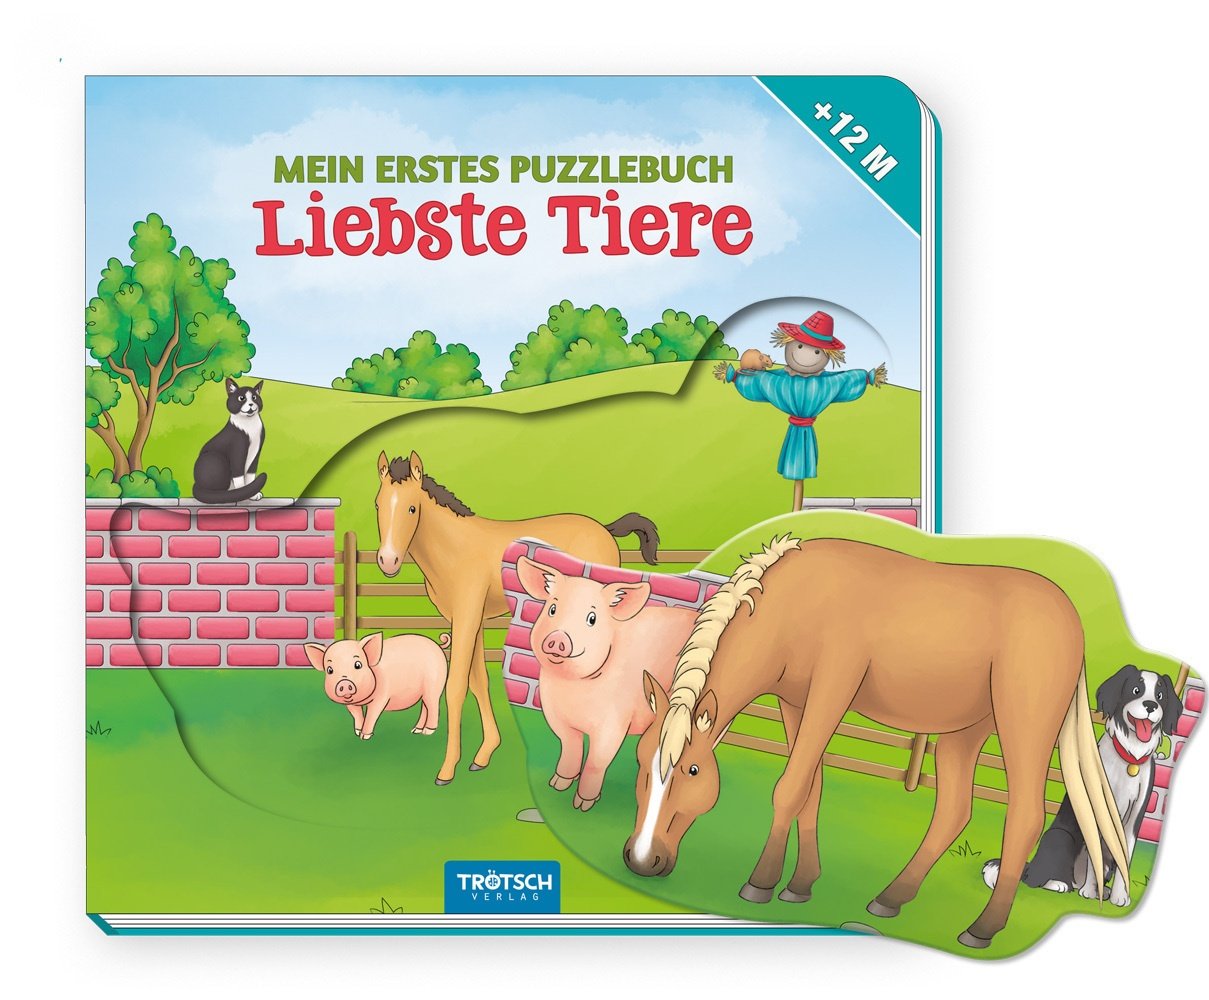 Trötsch Pappenbuch Mein Erstes Puzzlebuch Liebste Tiere - Trötsch Verlag GmbH & Co. KG  Pappband